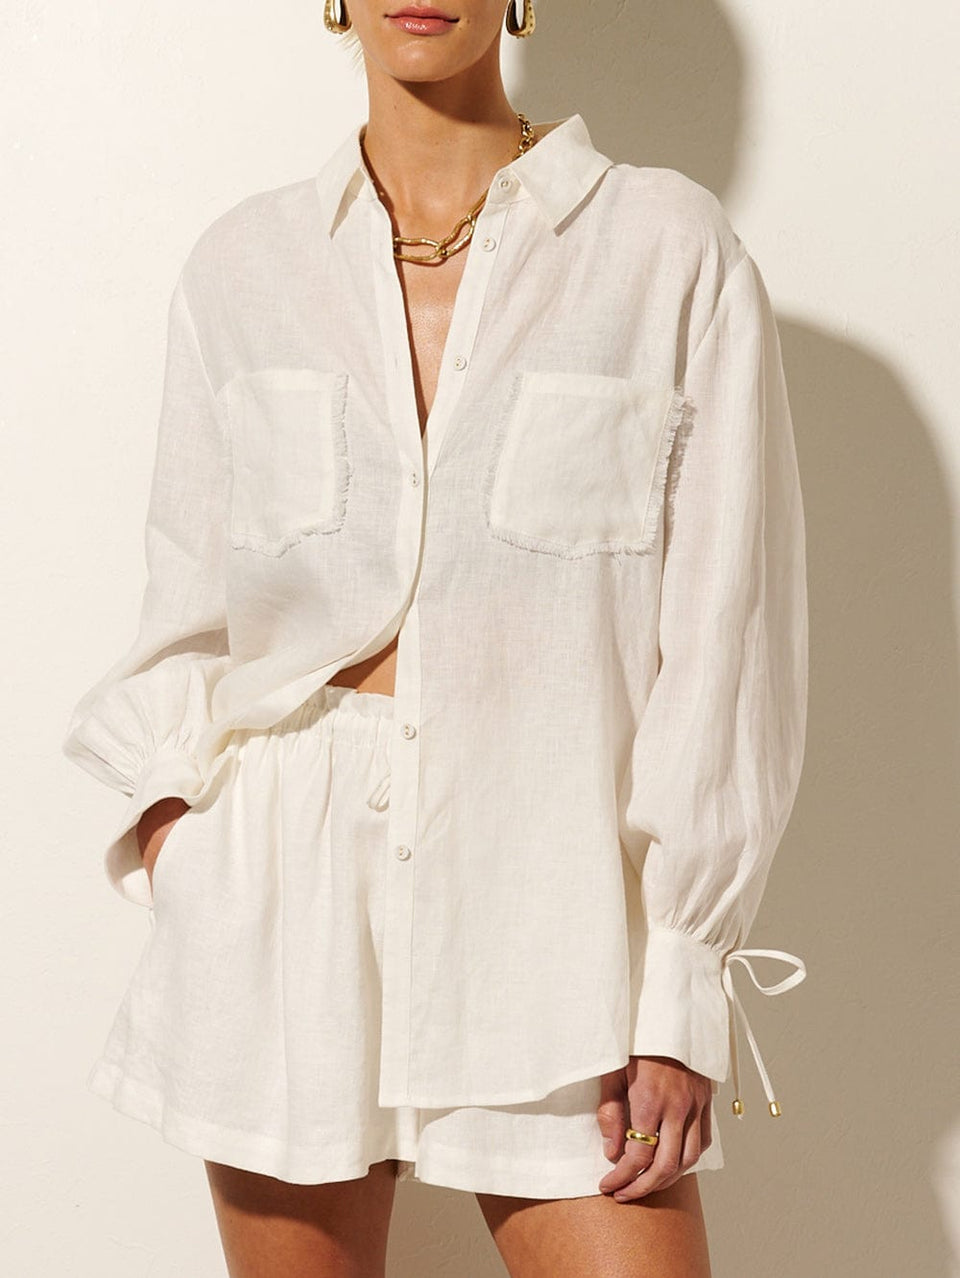 Franca Shirt KIVARI | Model wears white linen shirt